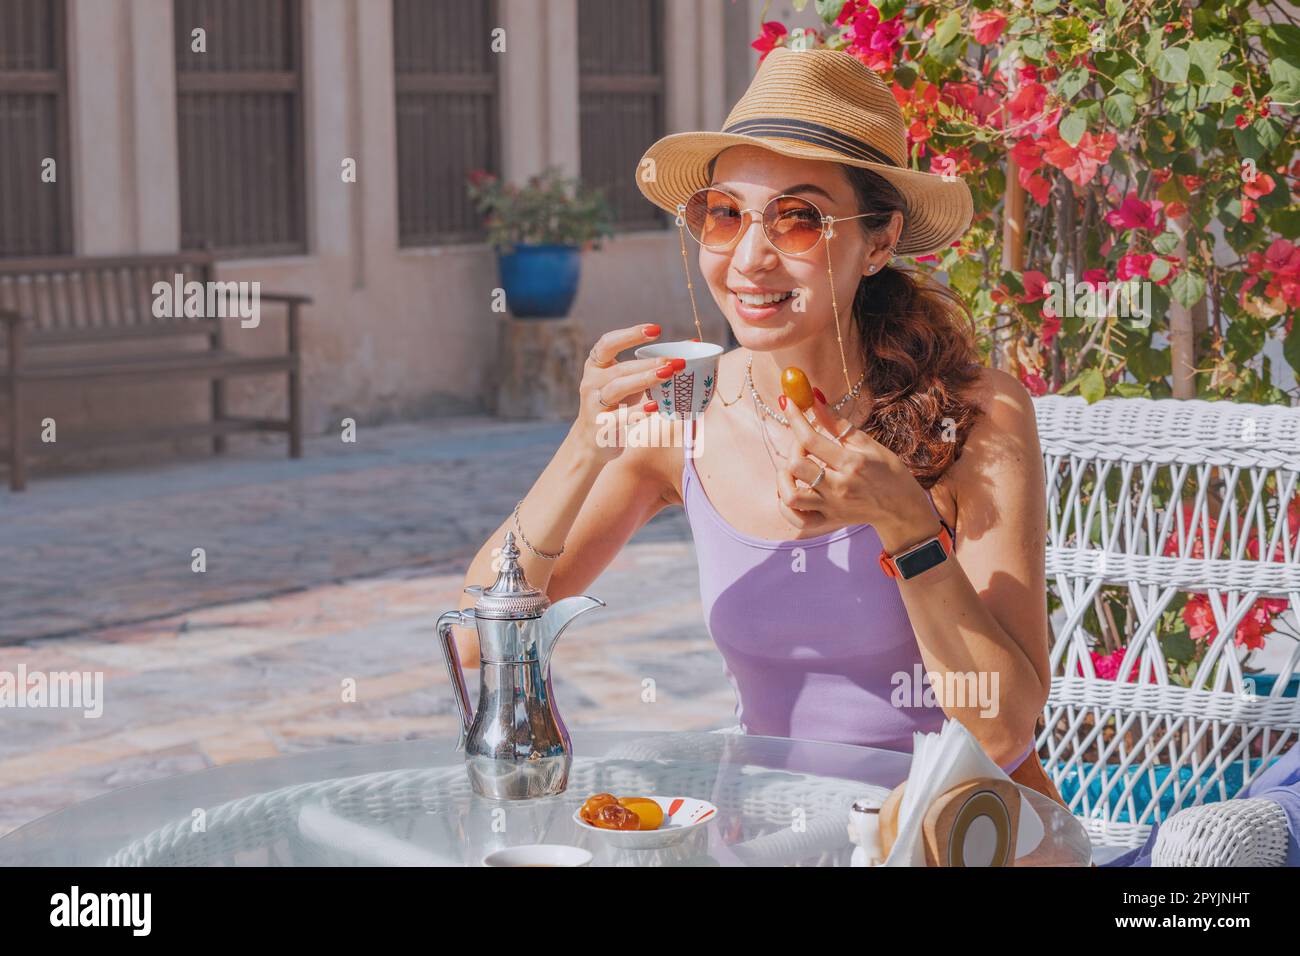 Ein Mädchen in Dubai genießt das einfache Vergnügen einer Tasse arabischen Kaffees, begleitet von der Süße frischer Datteln in einem bezaubernden Café Stockfoto